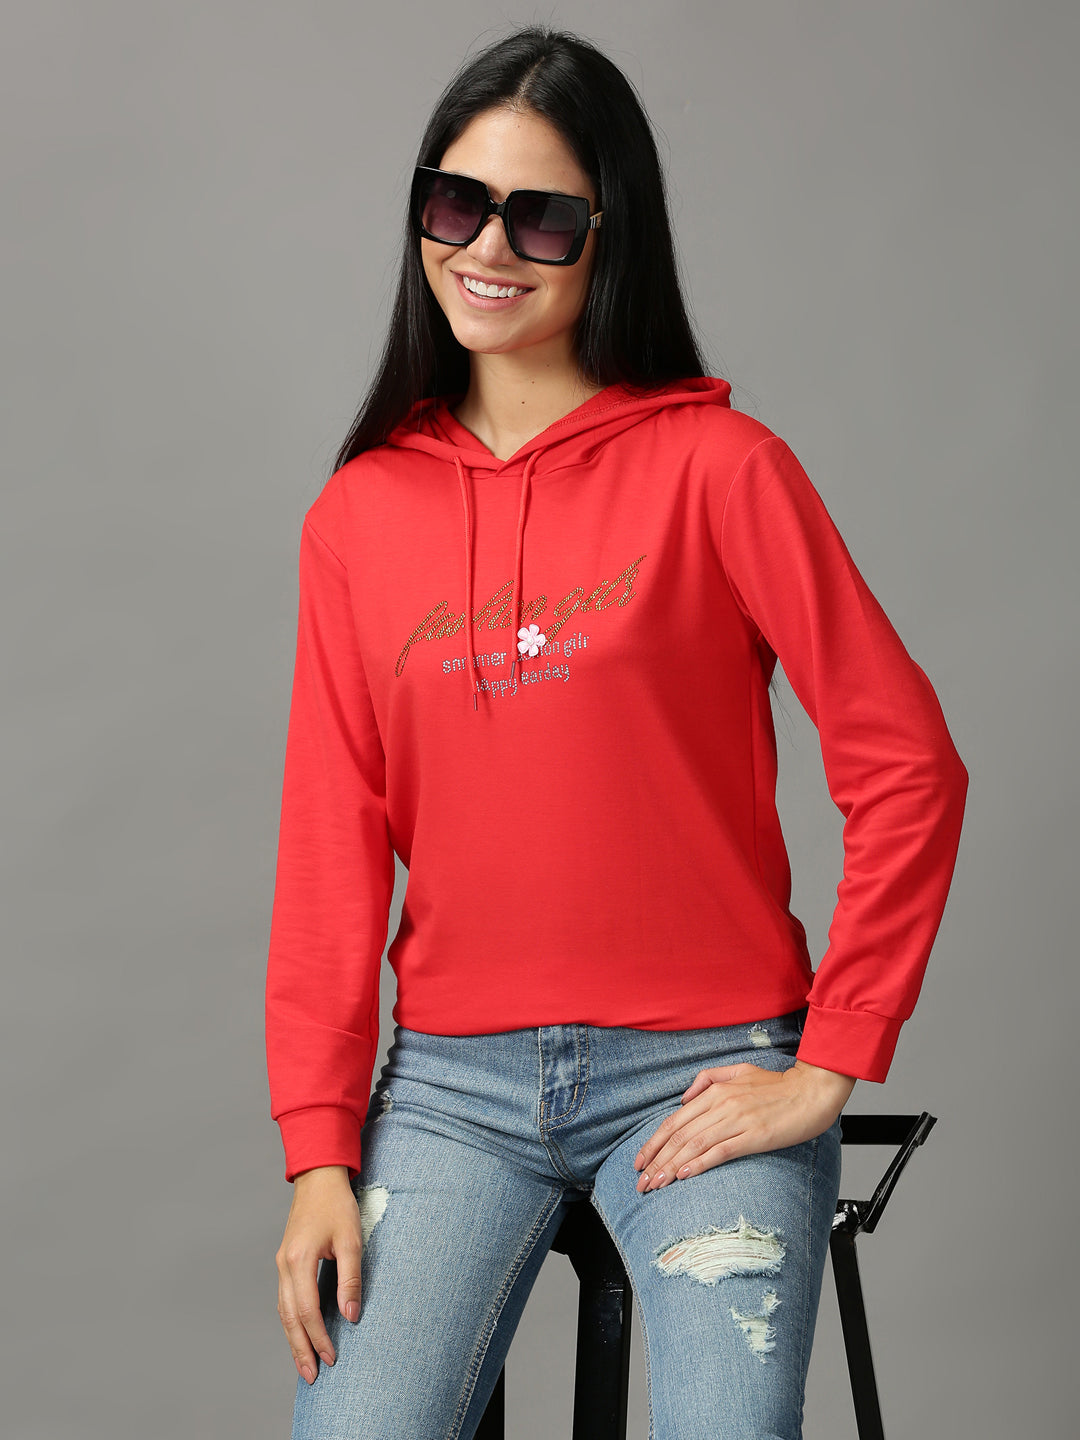 Women's Red Solid Sweatshirt